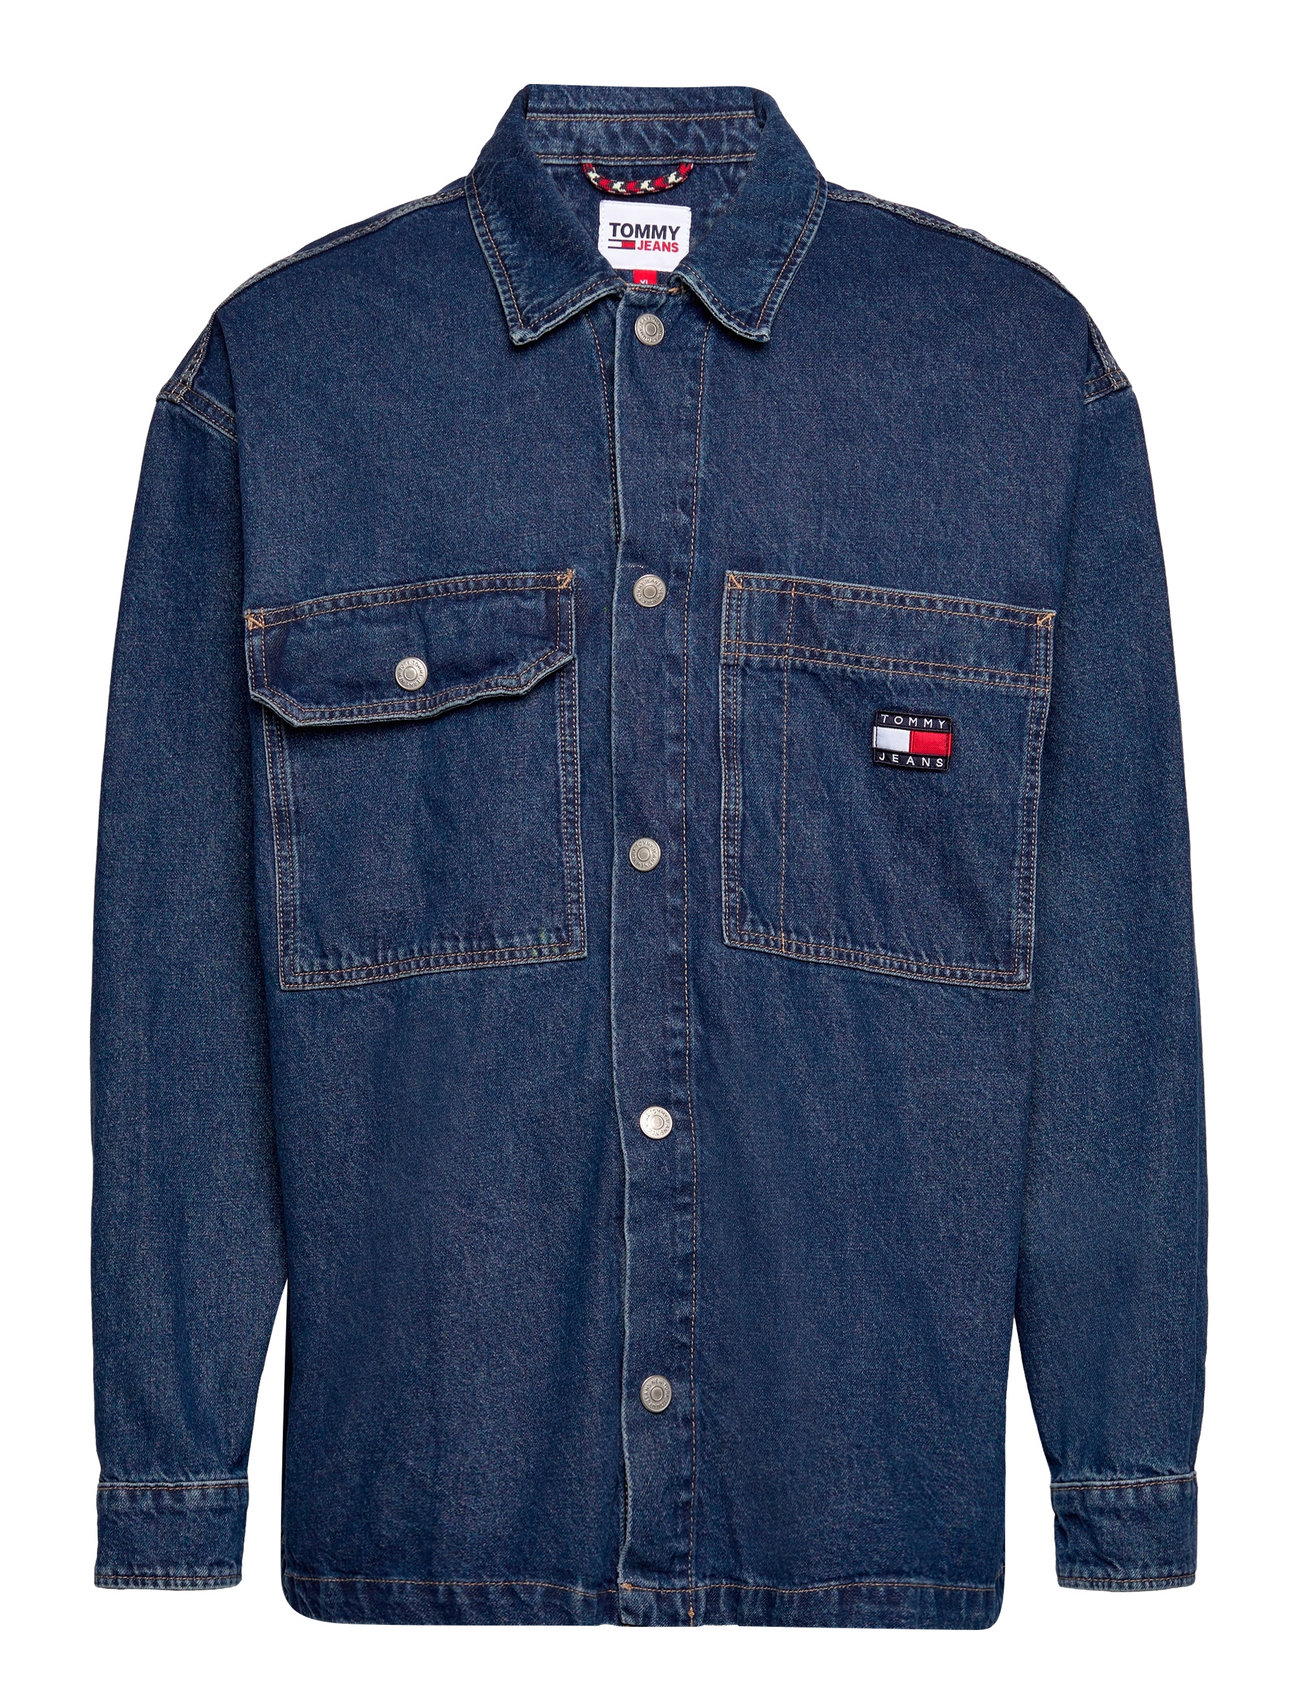 Worker Shirt Jacket Ag5035 Jakke Denimjakke Blue Tommy Jeans